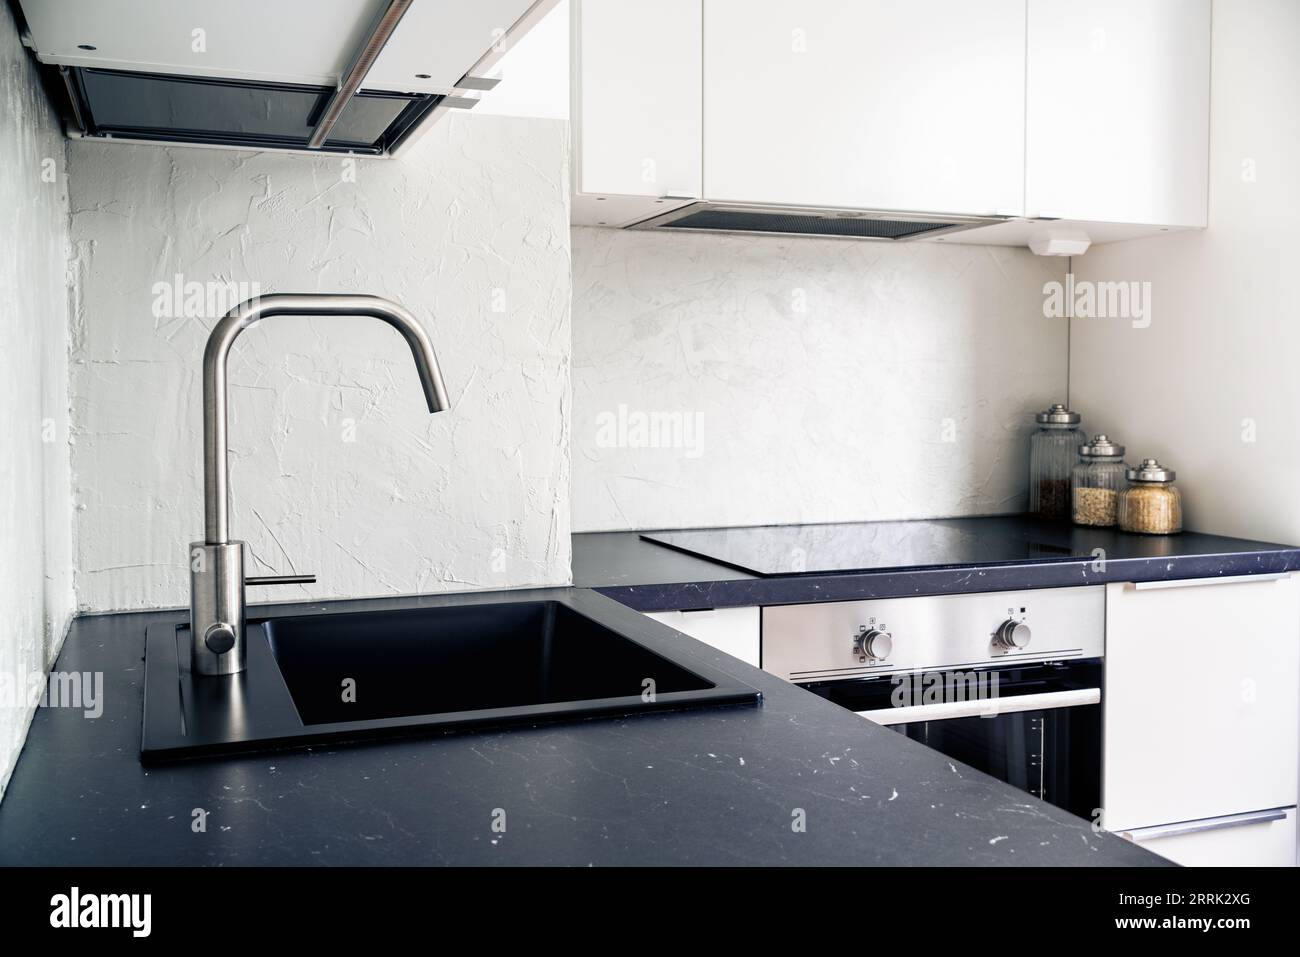 Comptoir de cuisine, robinet, robinet d'eau et évier. Design d'intérieur scandinave blanc et noir dans un appartement et une maison modernes. Cuisinière à induction. Banque D'Images